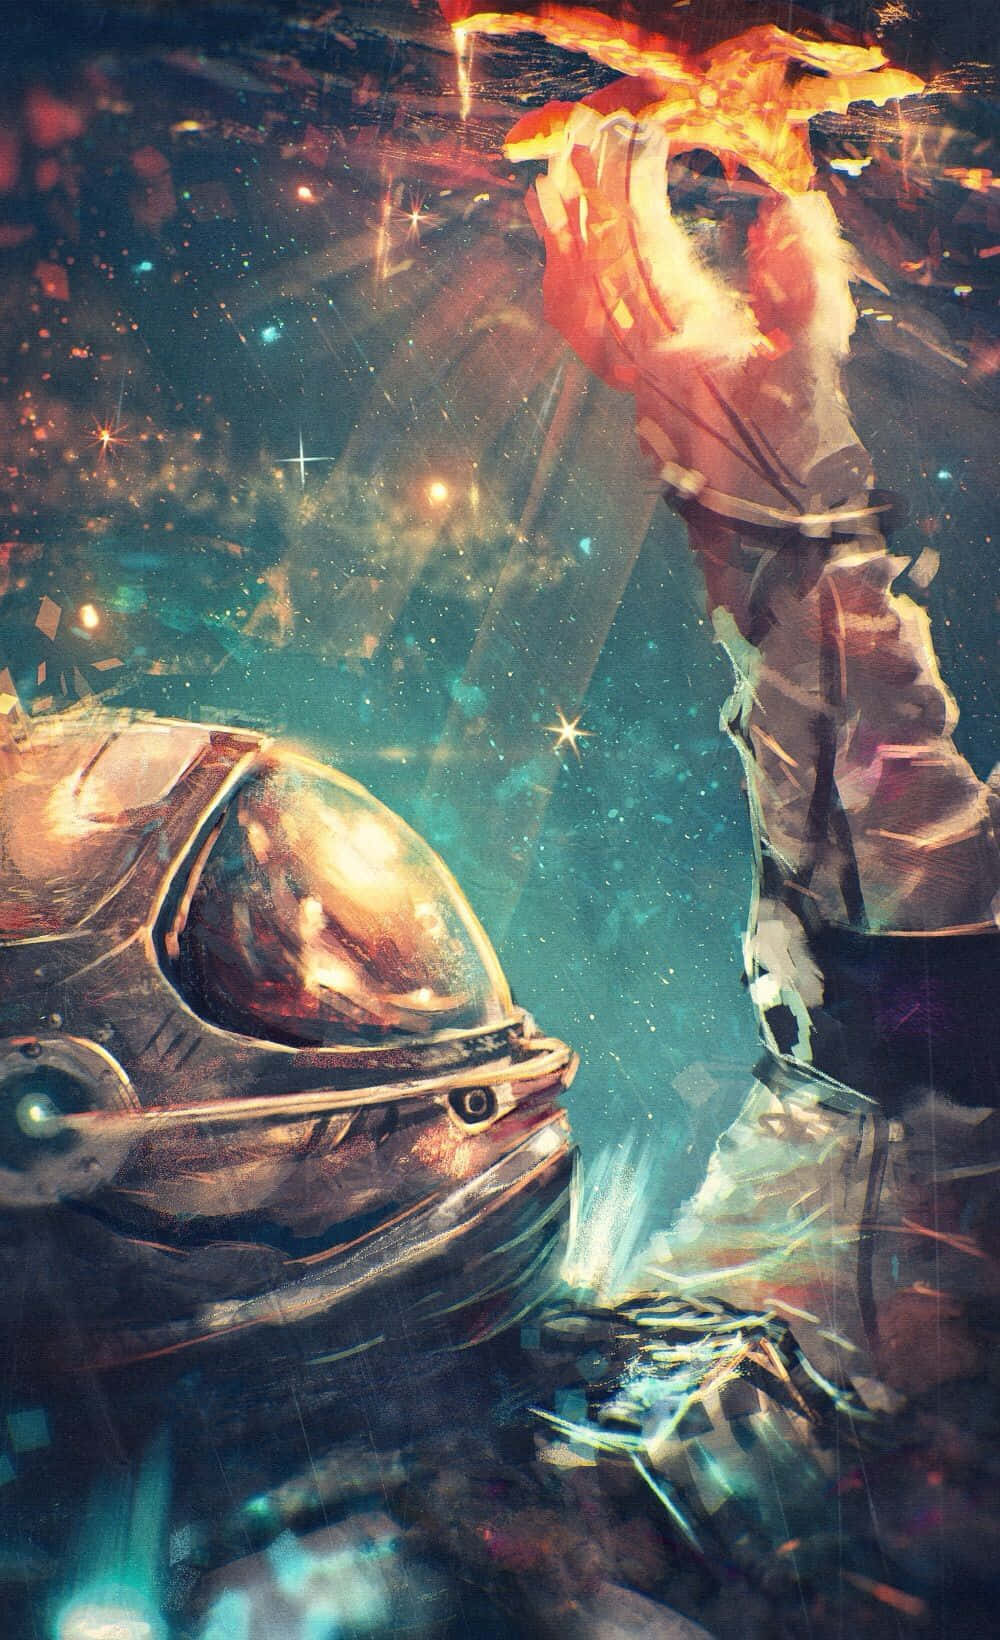 Entdeckedie Geheimnisse Des Universums Mit Trippy Galaxy Wallpaper